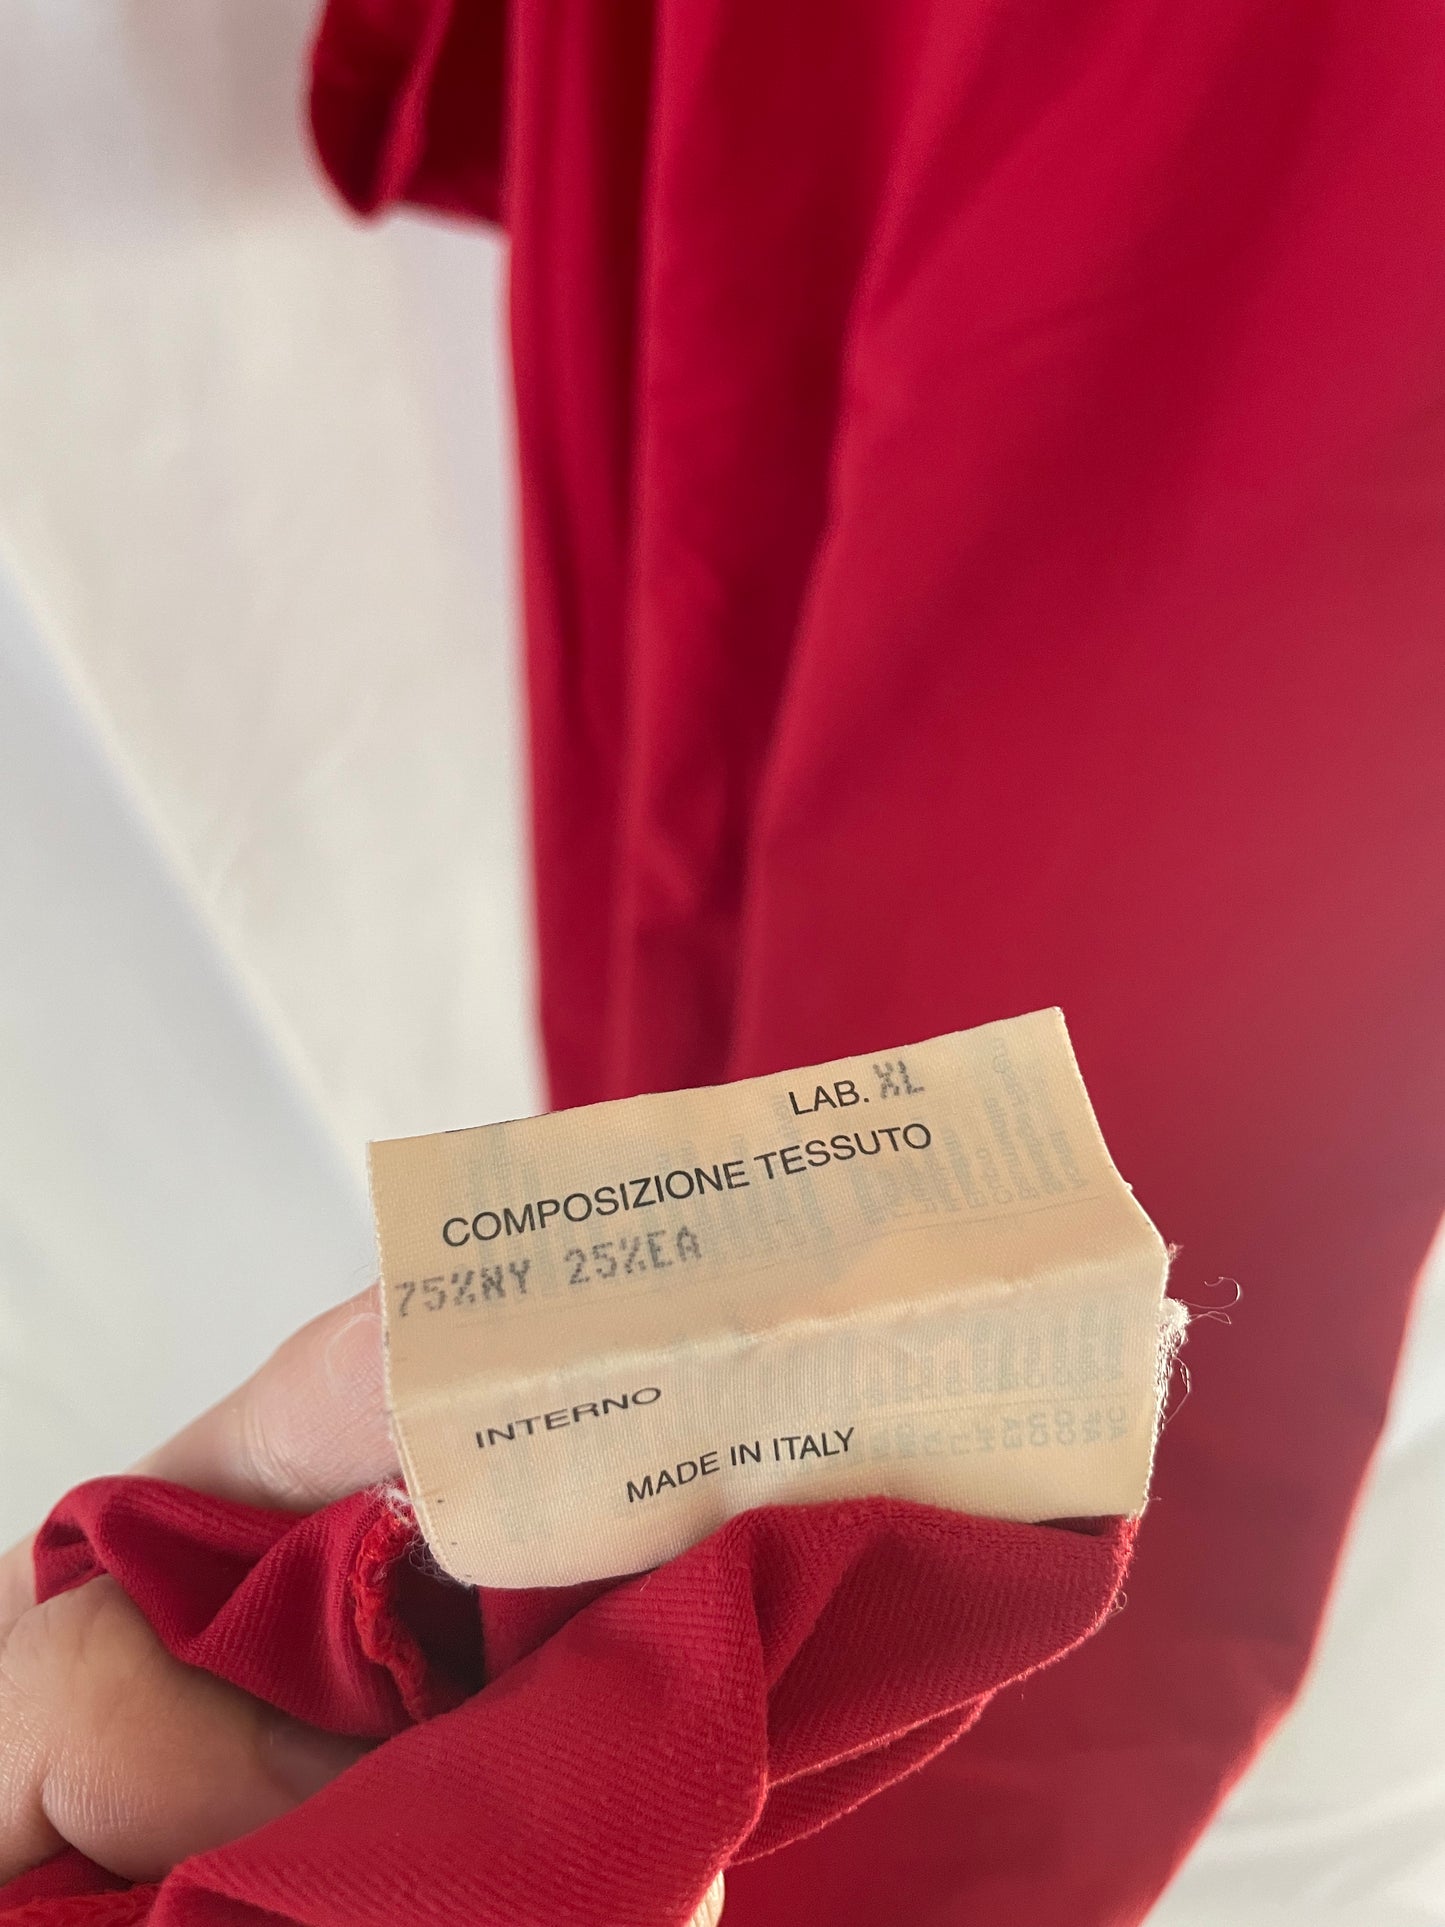 Vintage '90s Fendi Red Detachable Cutout Dress